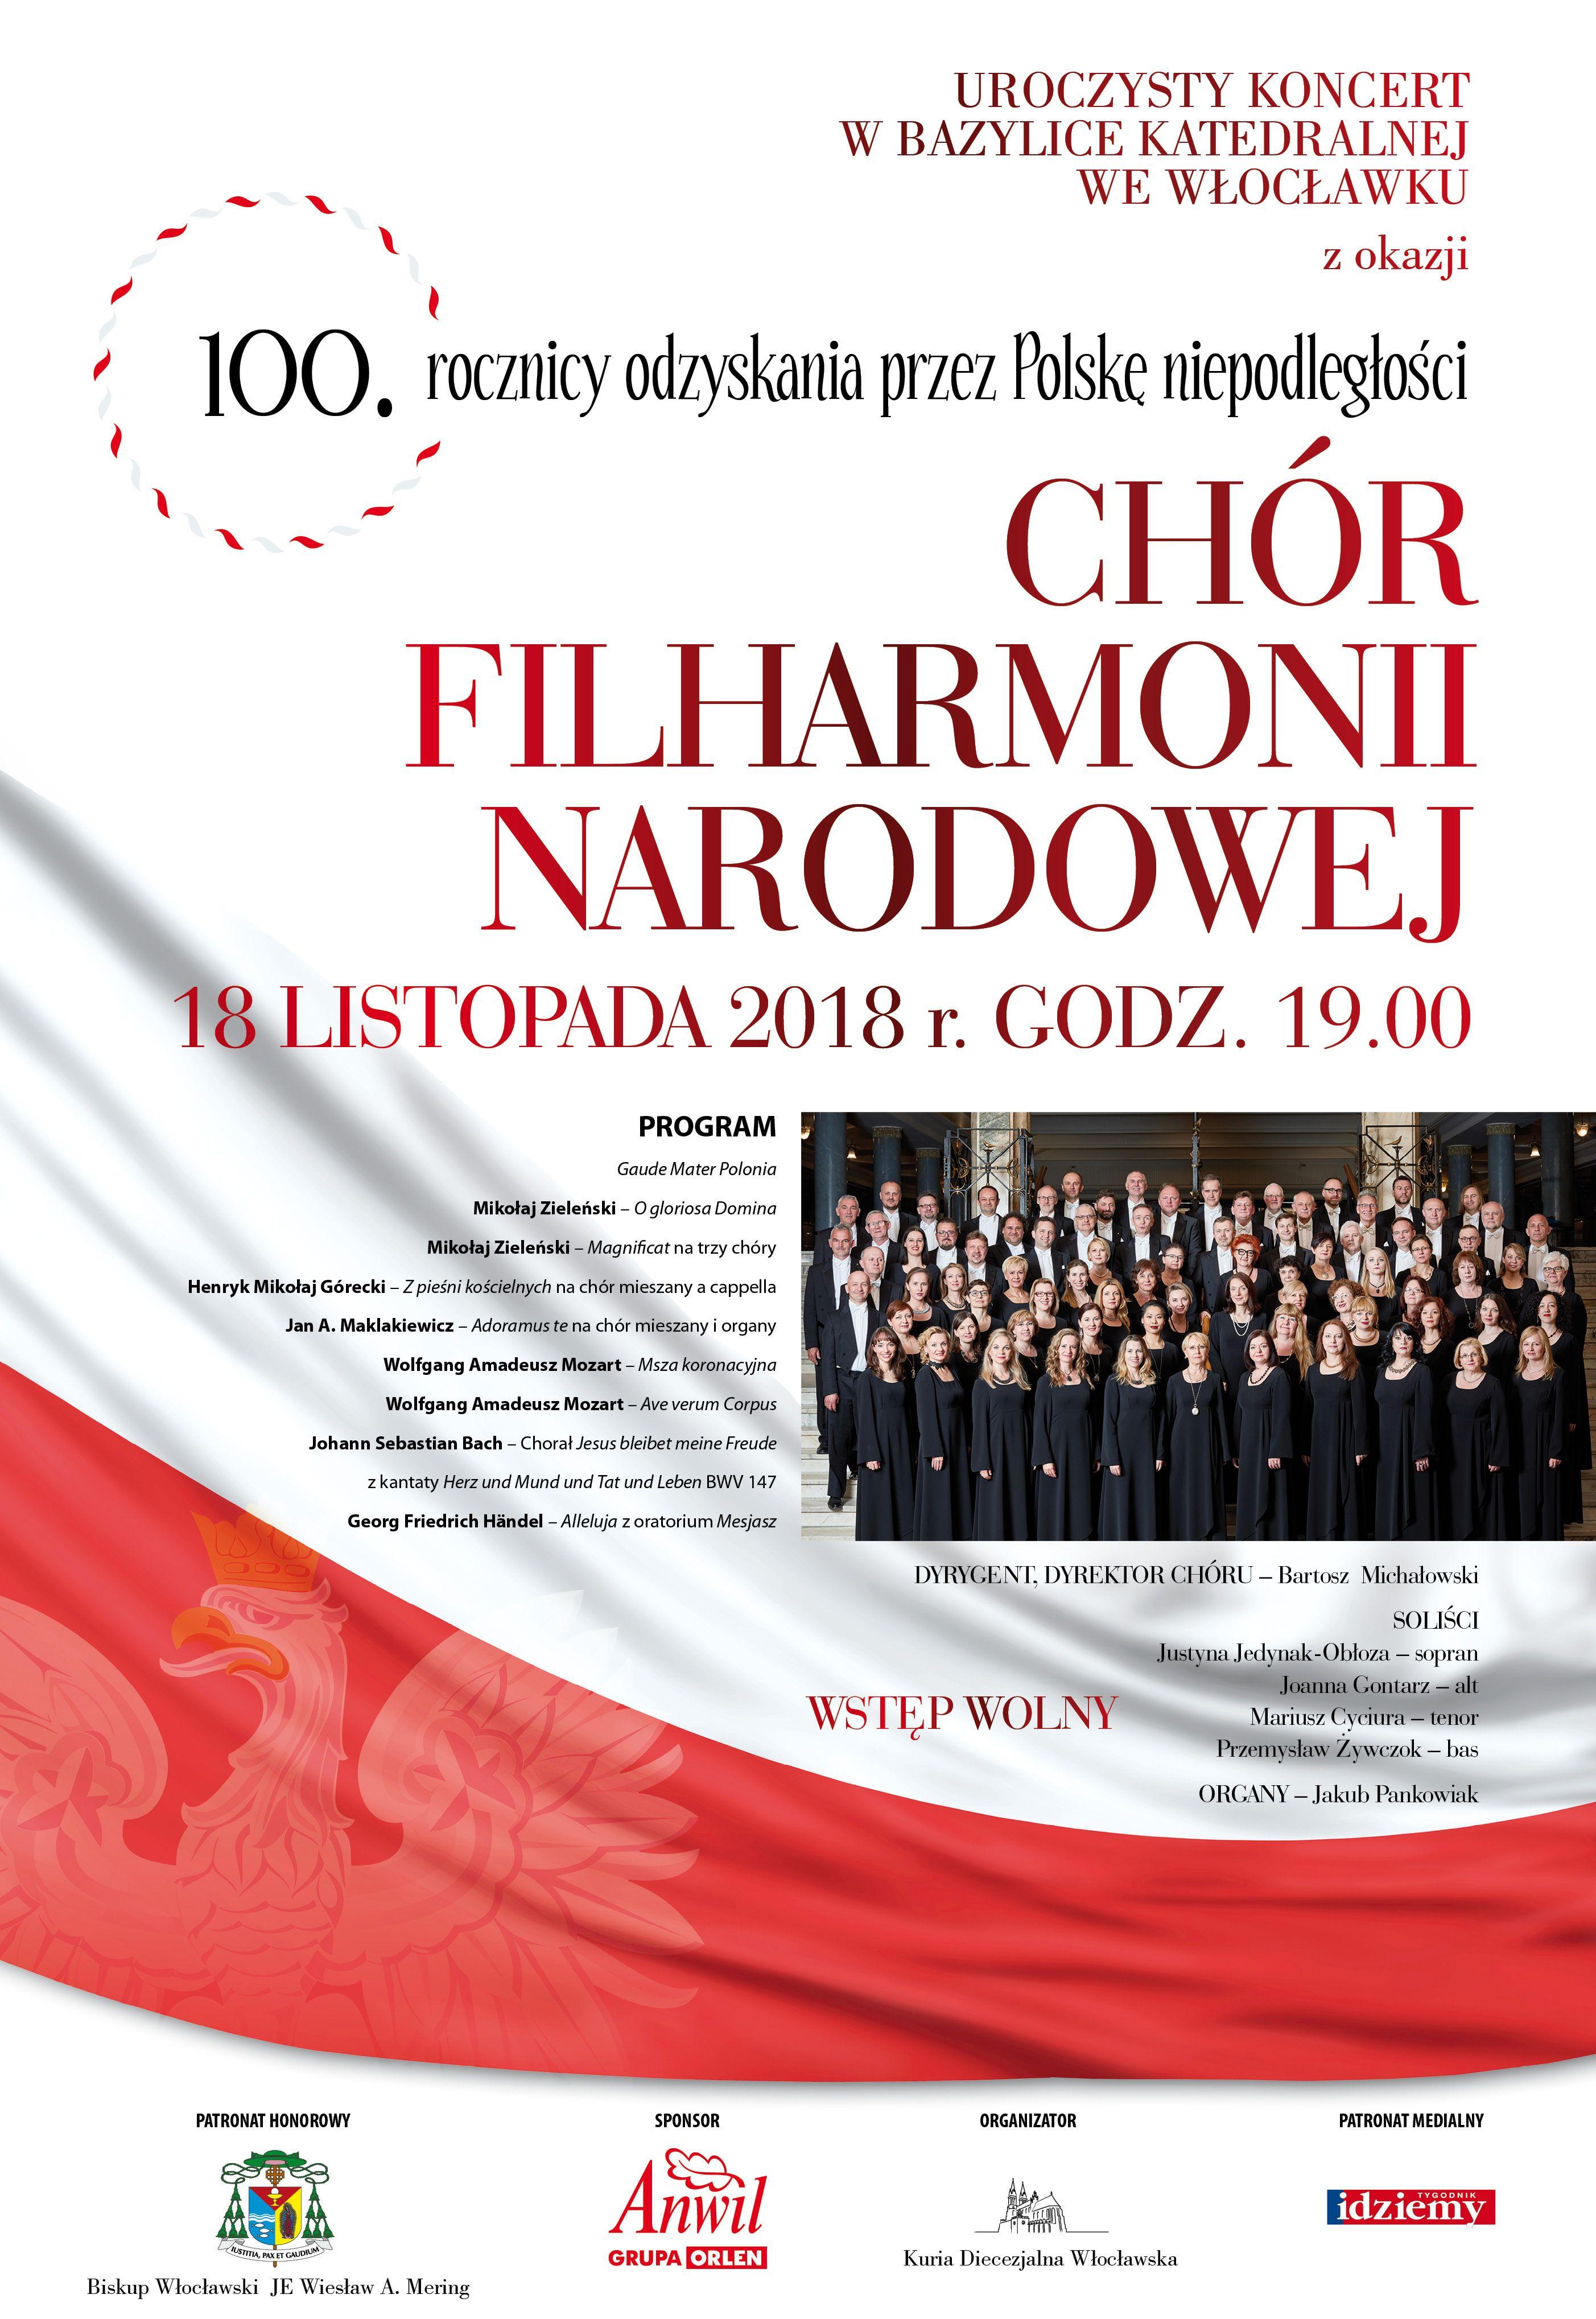 Koncert Chóru Filharmonii Narodowej w Bazylice Katedralnej (zaproszenie)